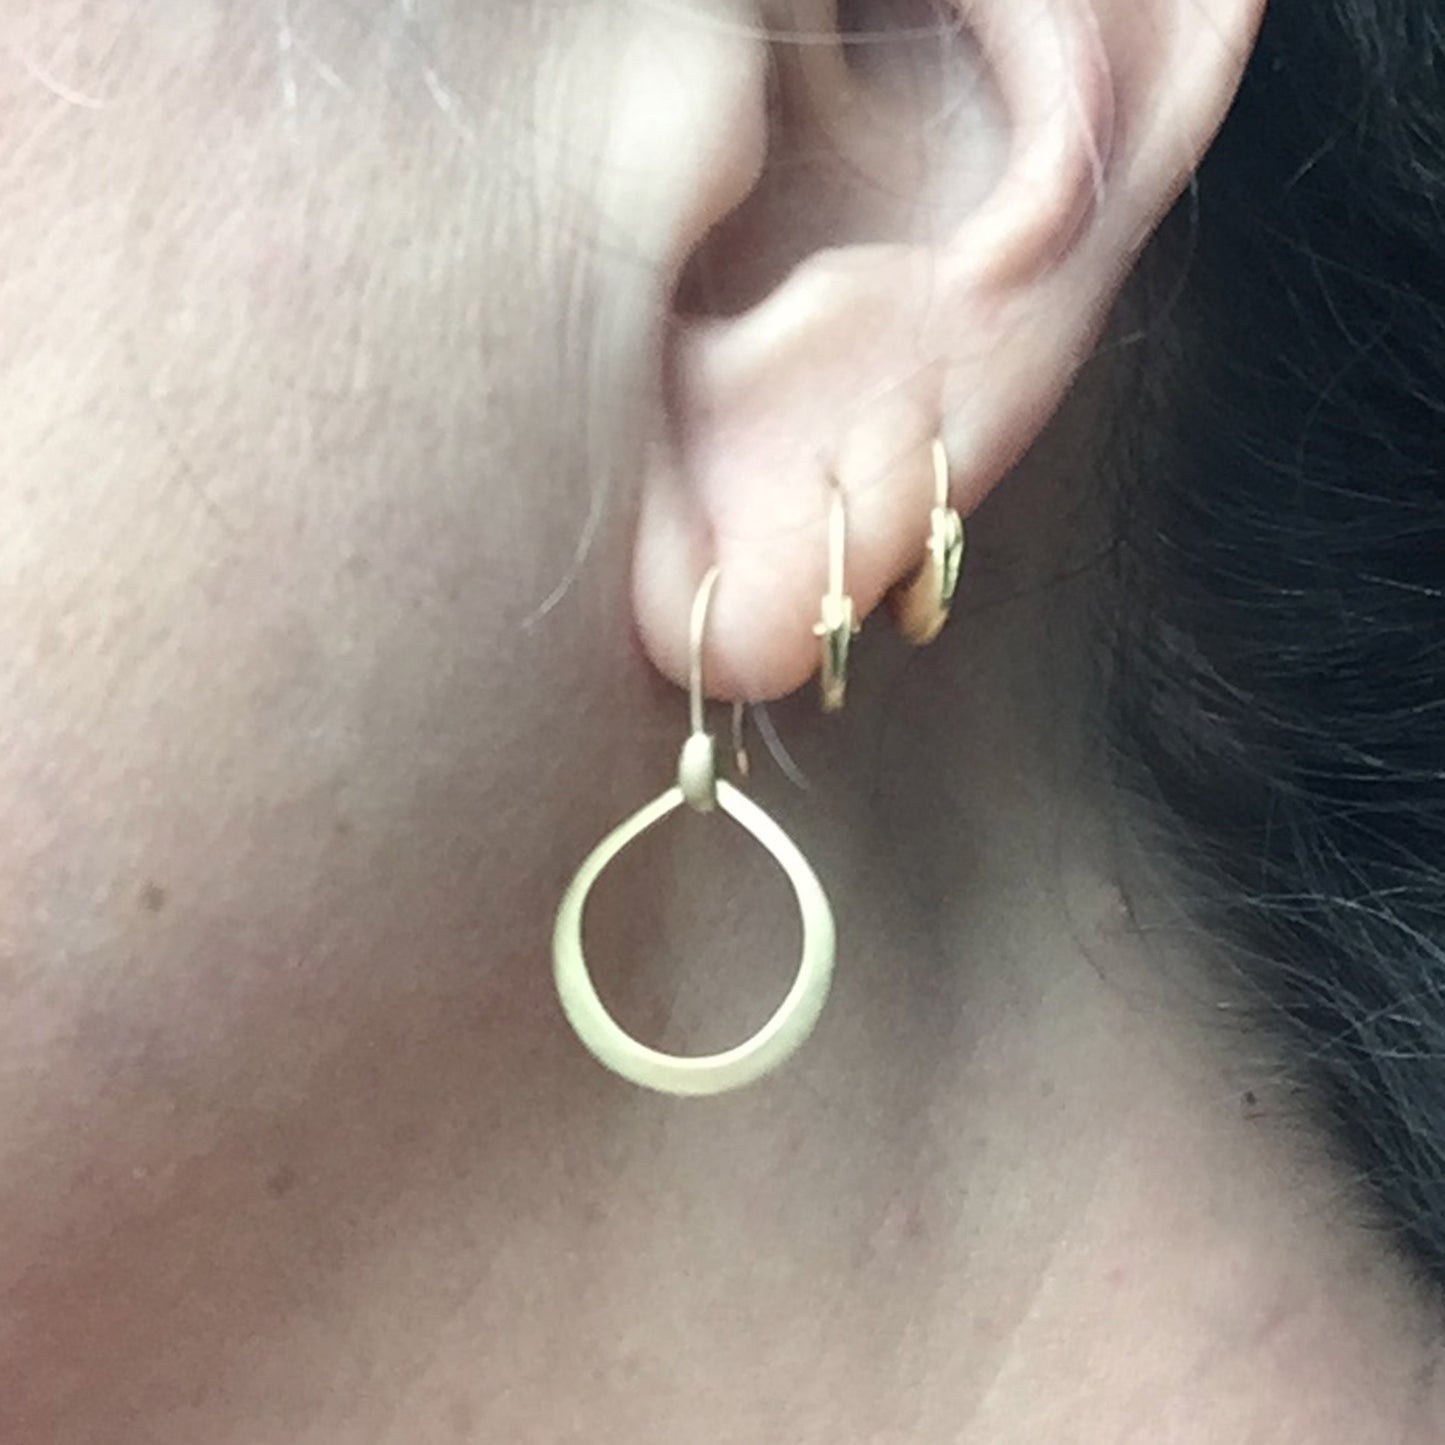 Dakri Hoop Small earrings, on ear